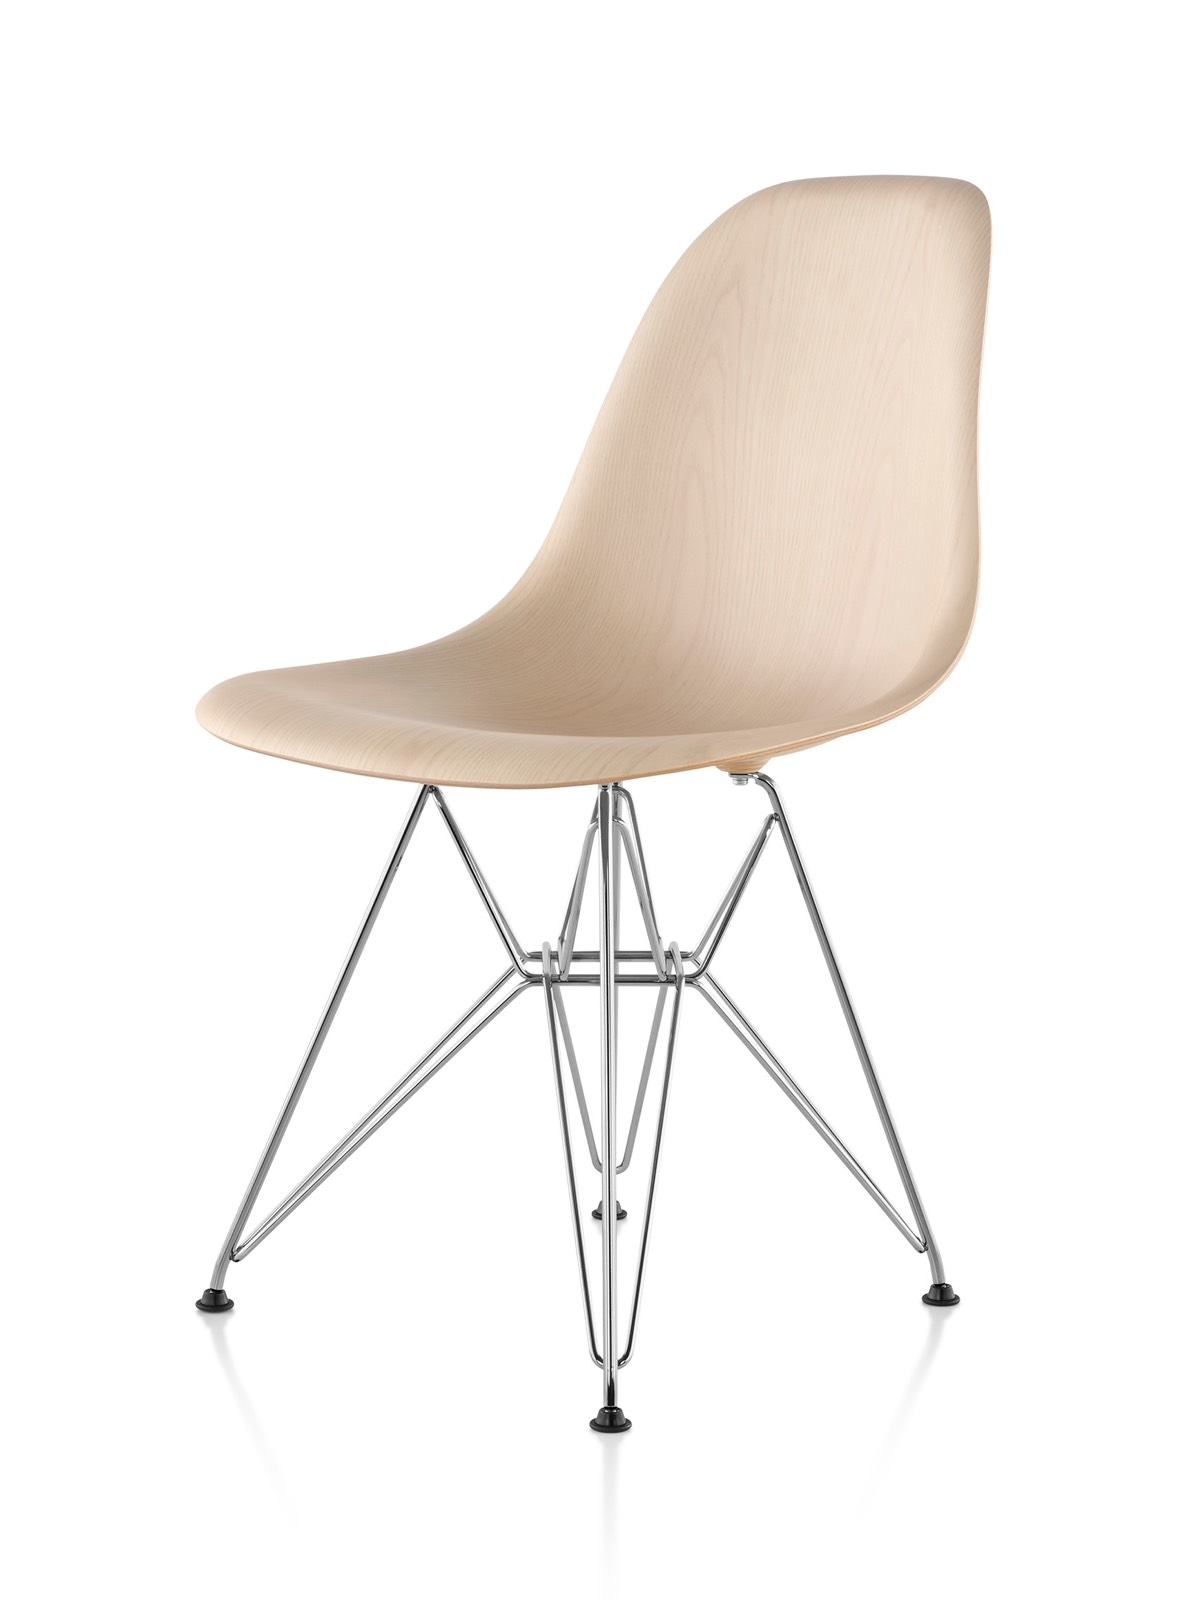 Eames Cadeira lateral de madeira moldada com acabamento leve e base de arame, vista de um ângulo de 45 graus.